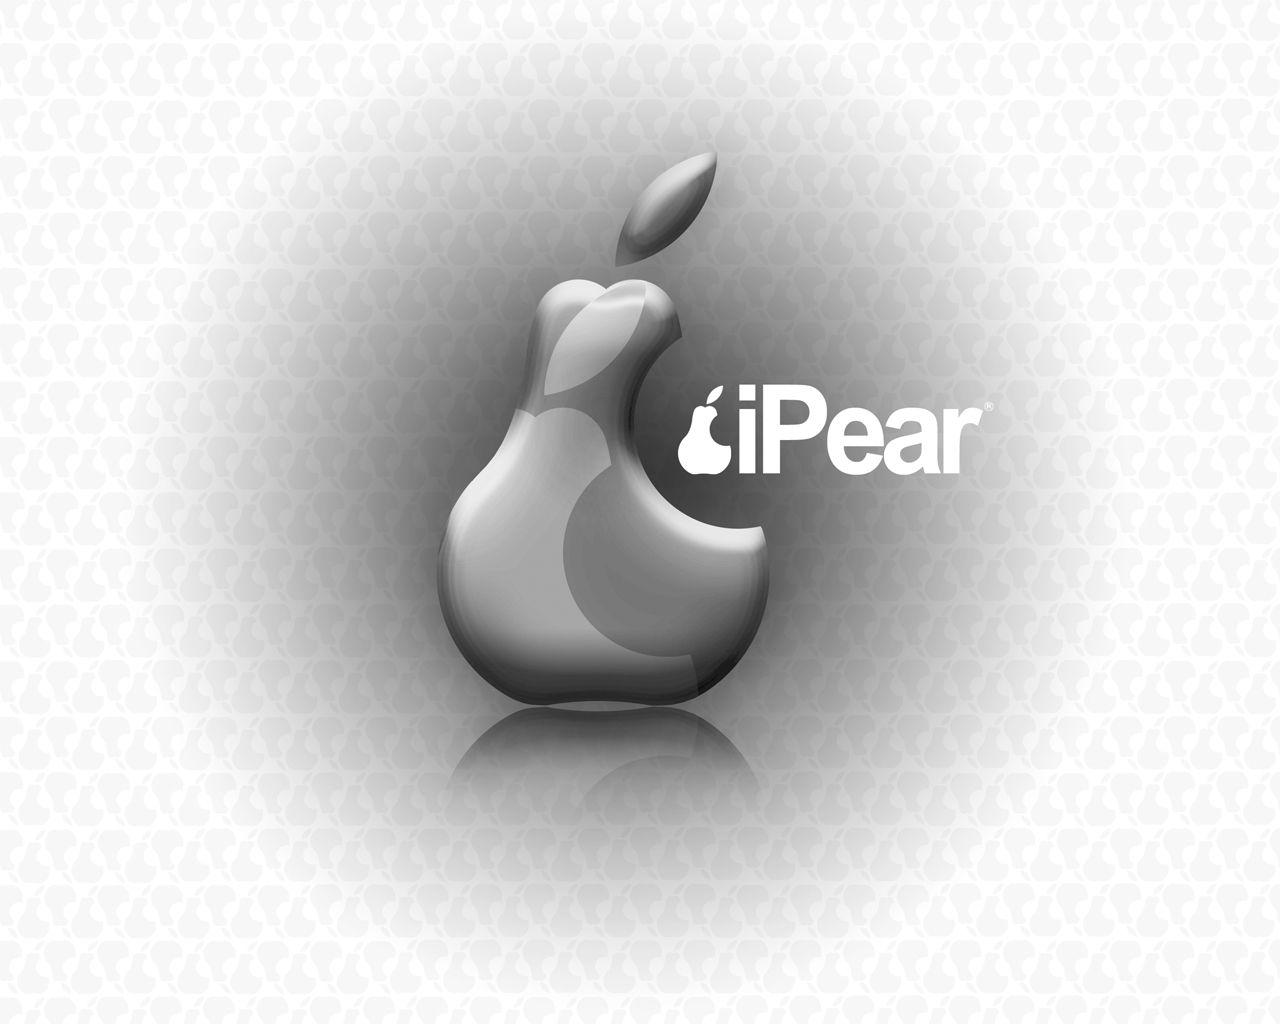 iPear Logo - iPear